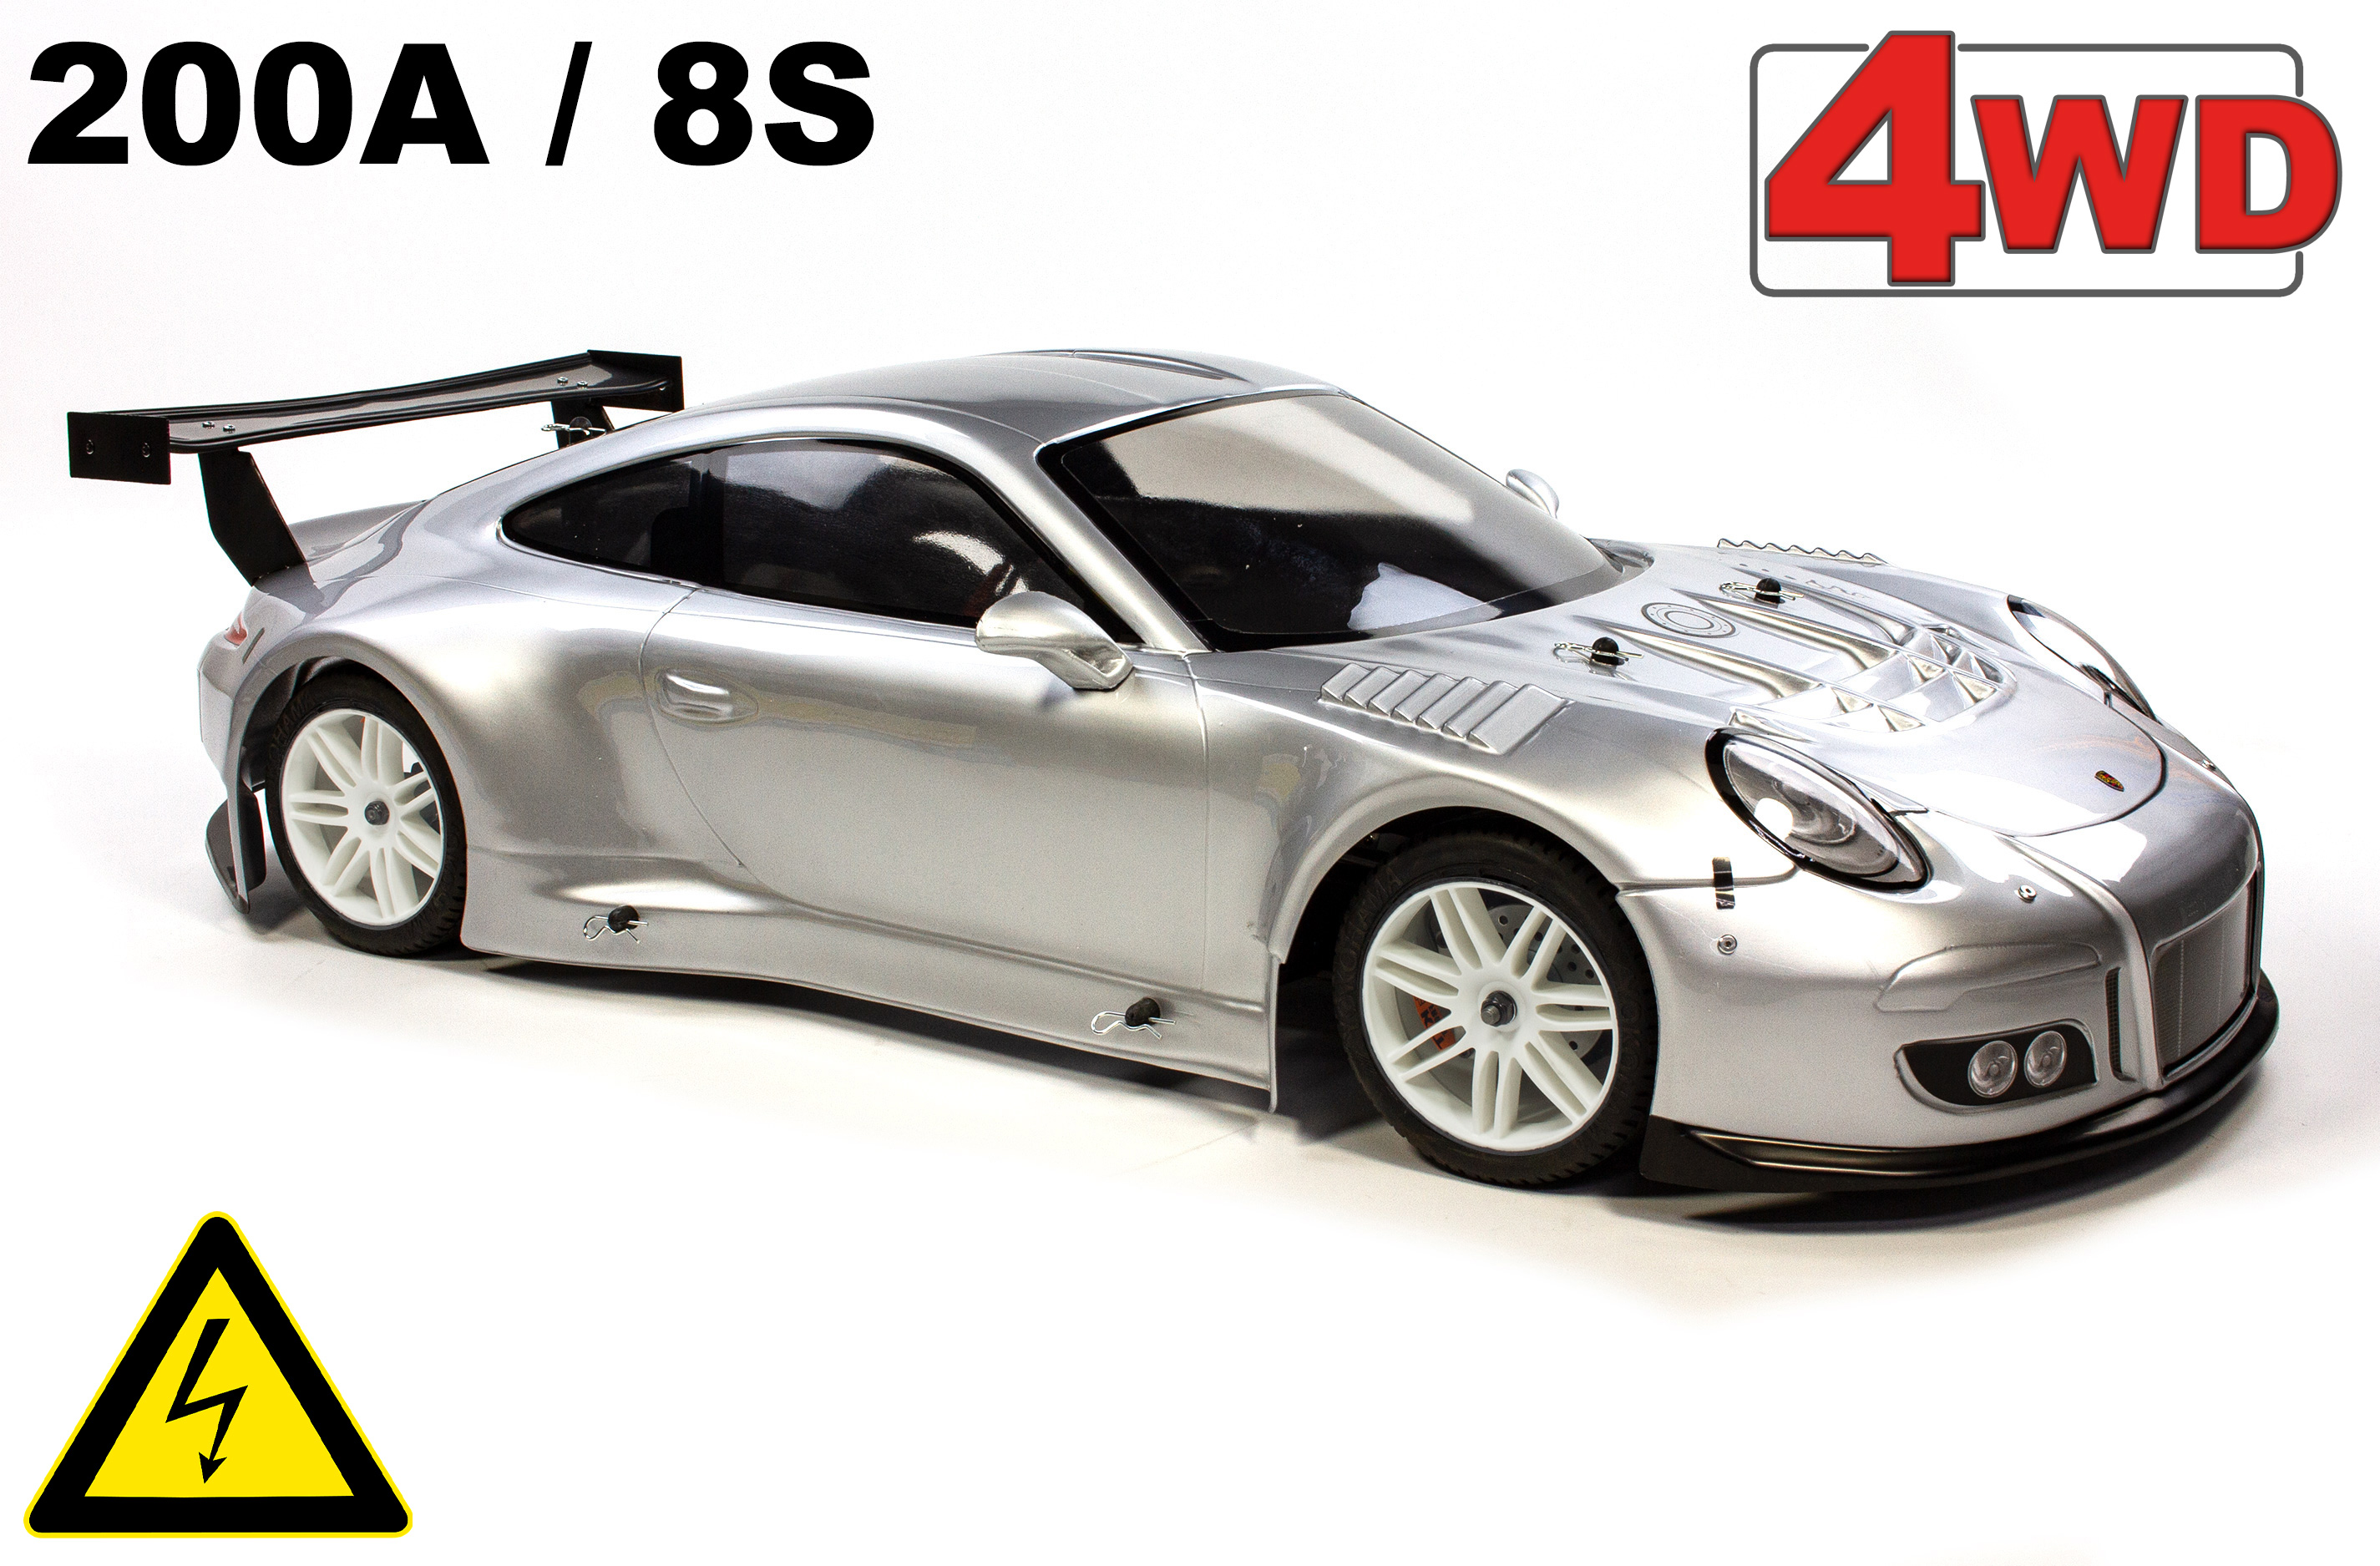 FG Sportsline 4WD-530 Elektro Porsche 911, 530 mm Radstand